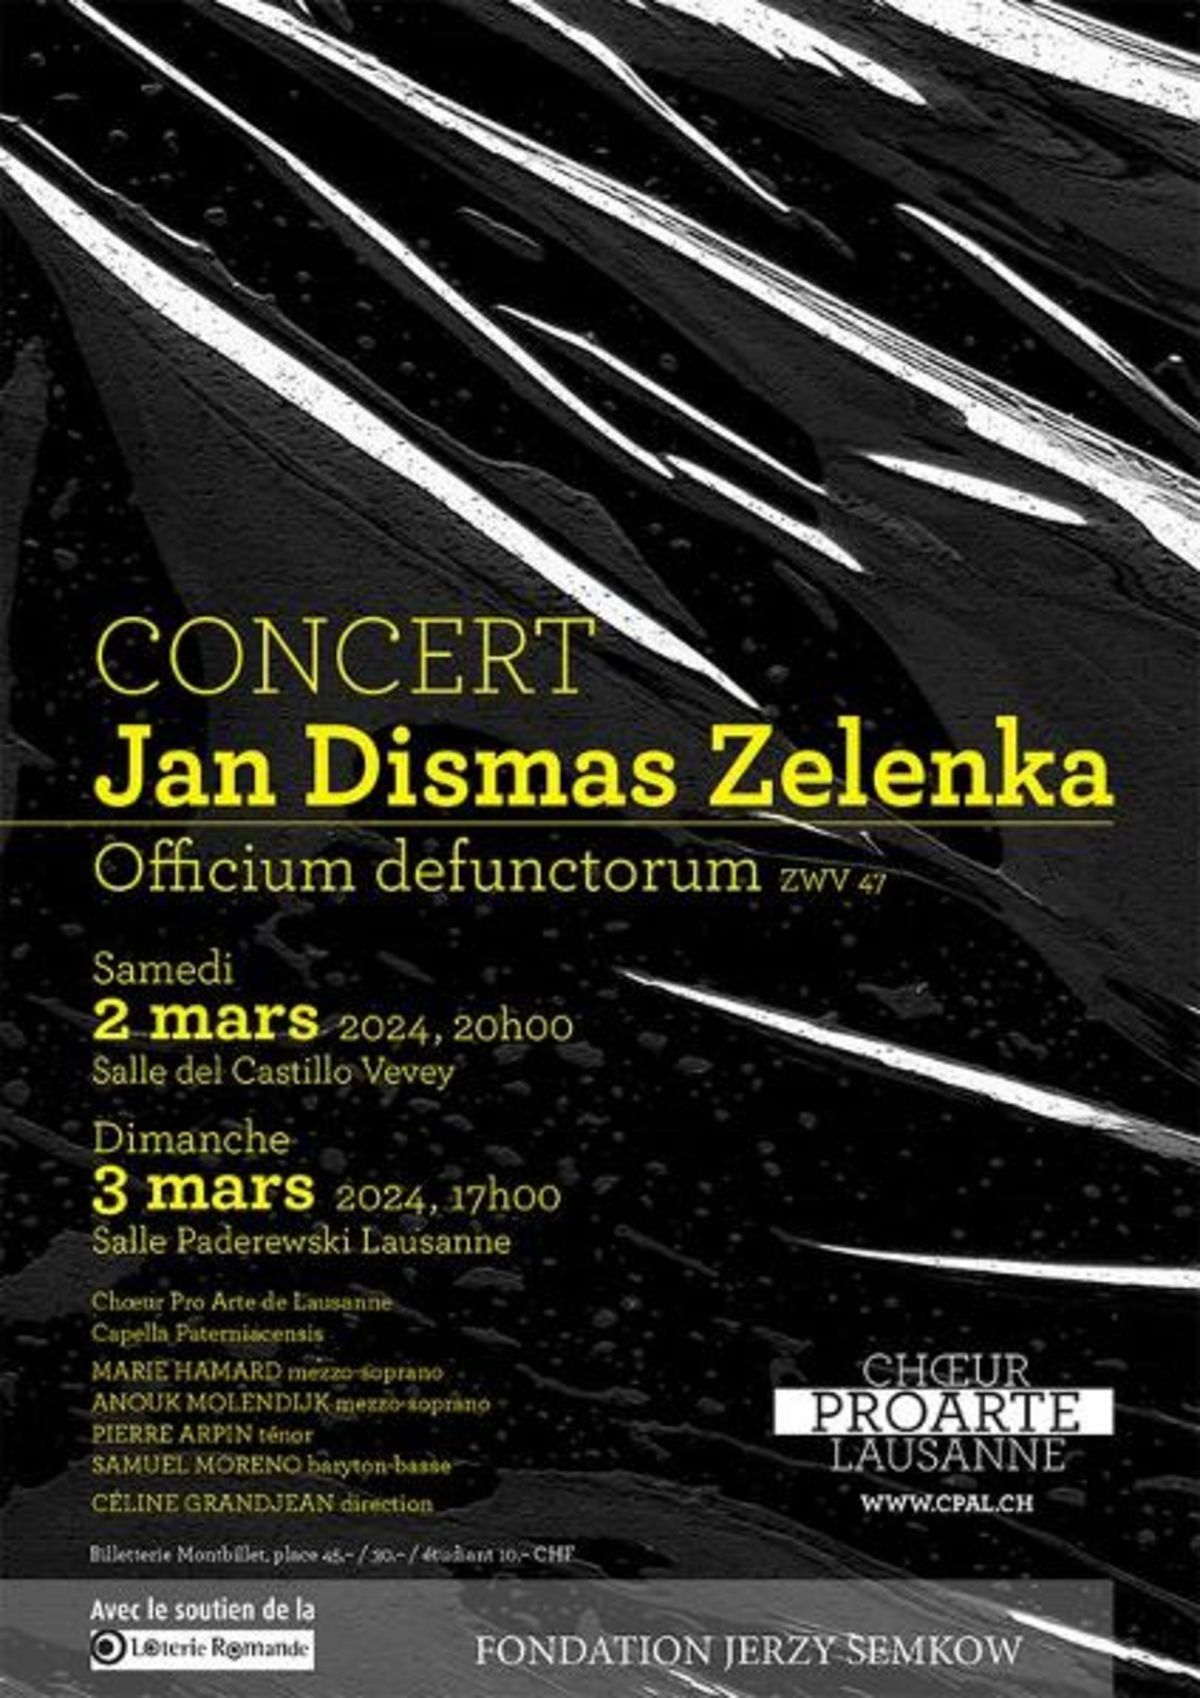 Jan Dismas Zelenka – Officium defunctorum ZWV 47